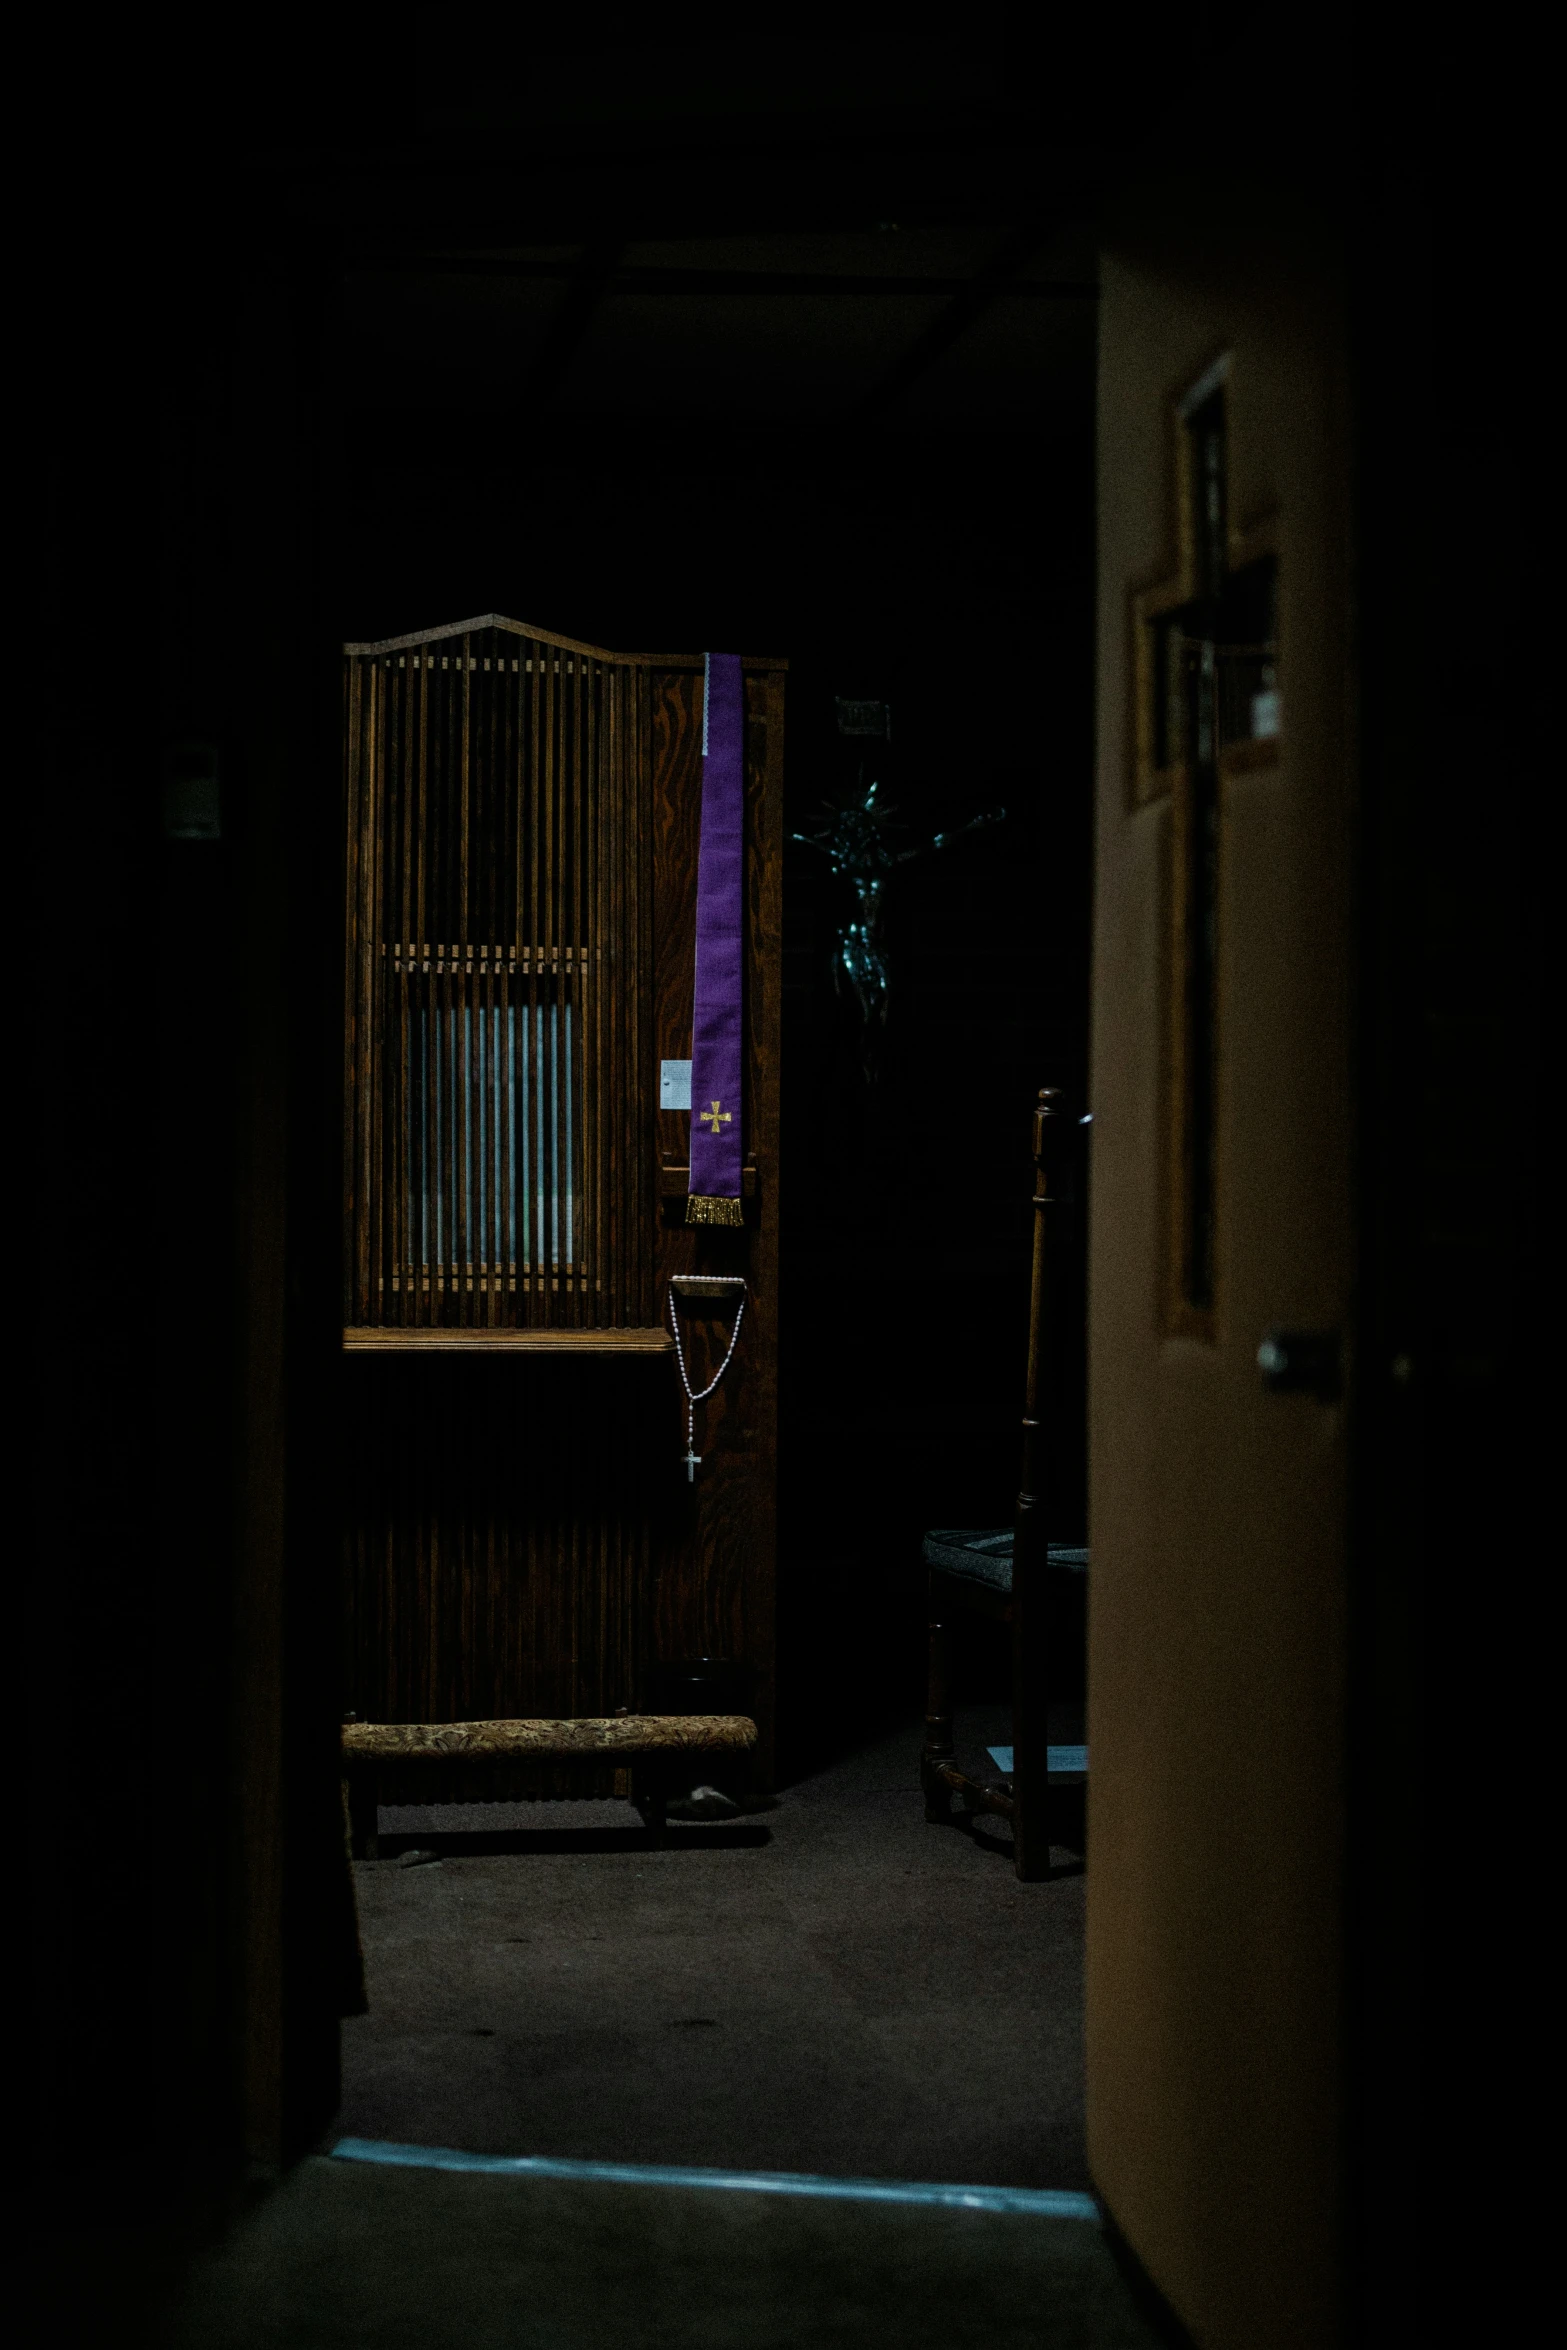 the door is dark in this very dimly lit room